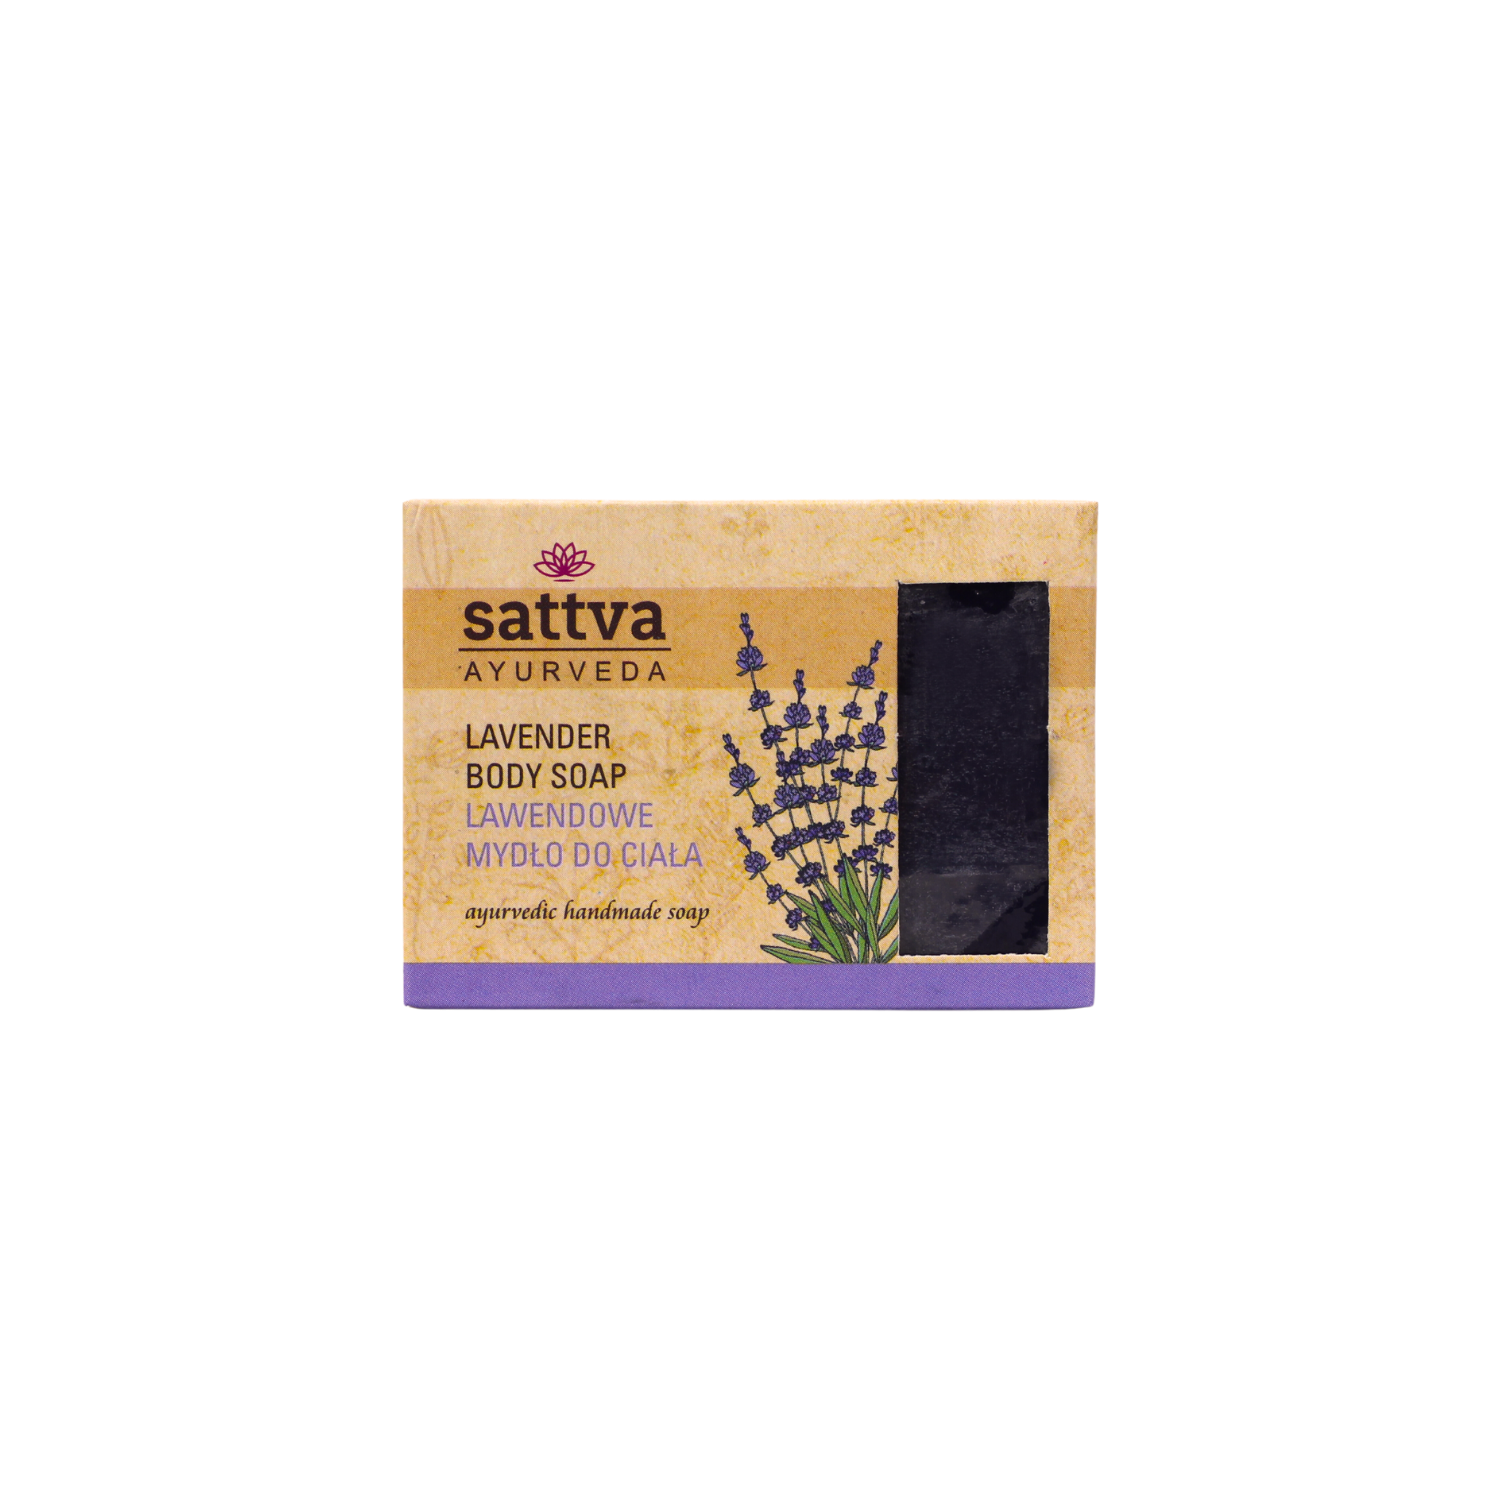 Мыло для тела Sattva, 125 гр sappo hill глицериновое крем мыло натуральное без запаха 12 брусков по 3 5 унций 100 г